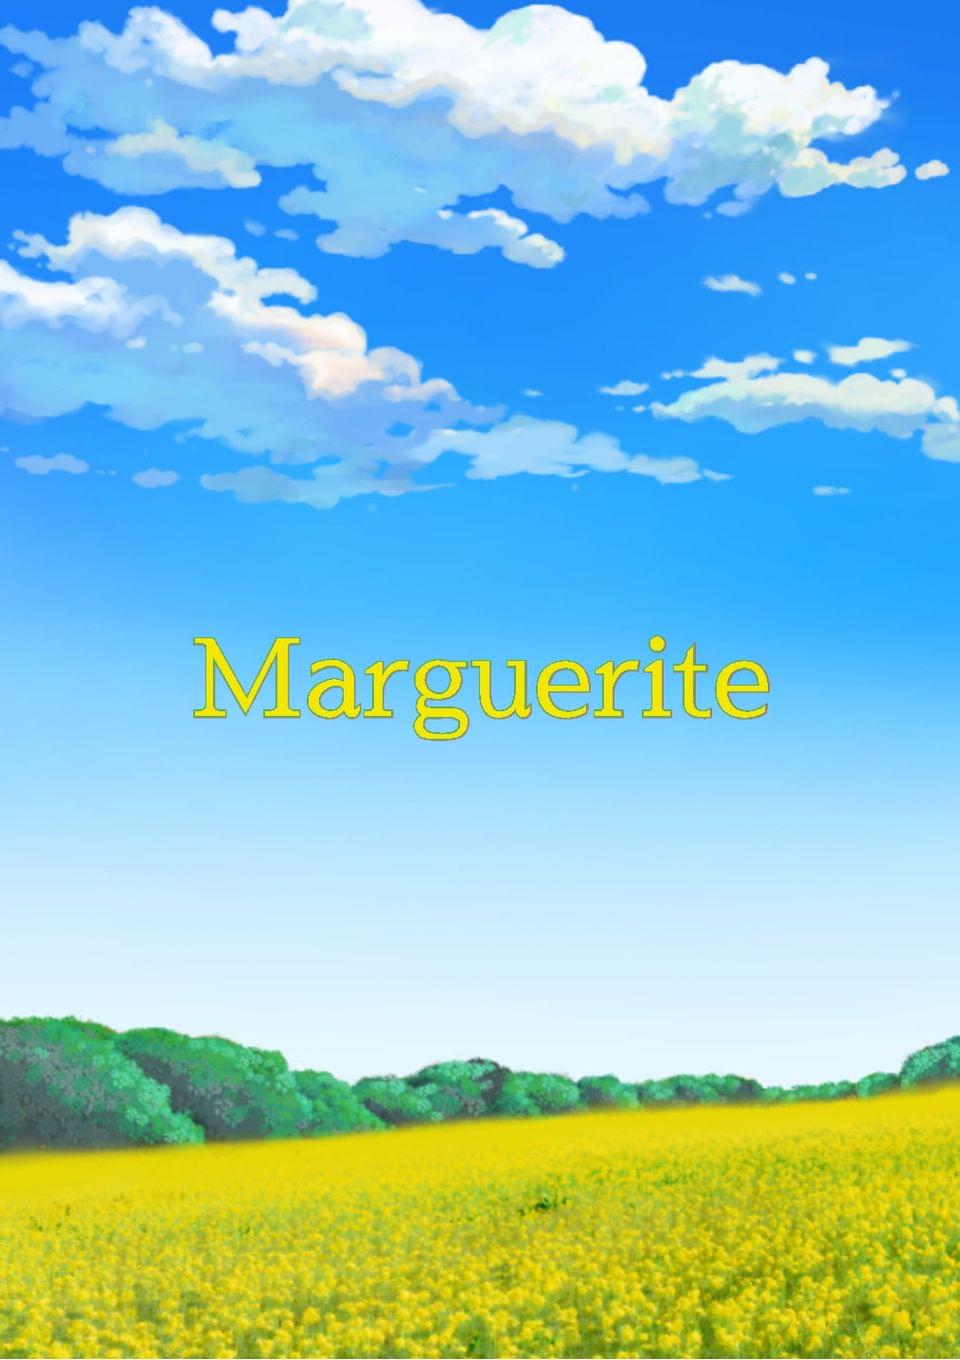  Marguerite